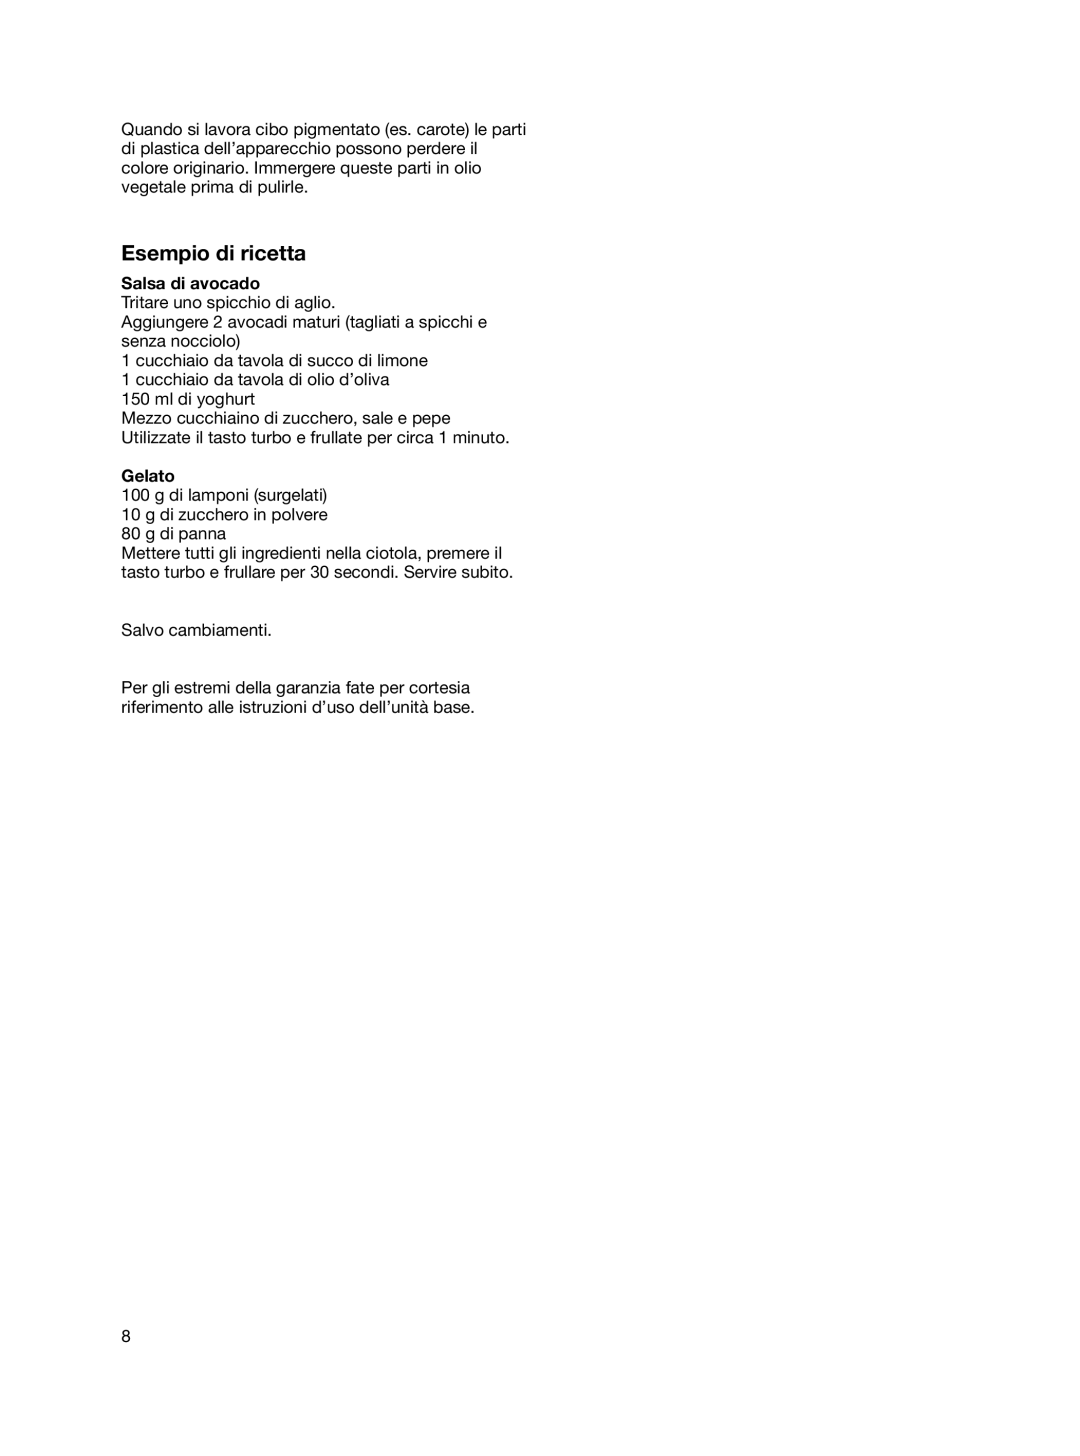 Braun 4191 manual Esempio di ricetta, Salsa di avocado, Gelato 